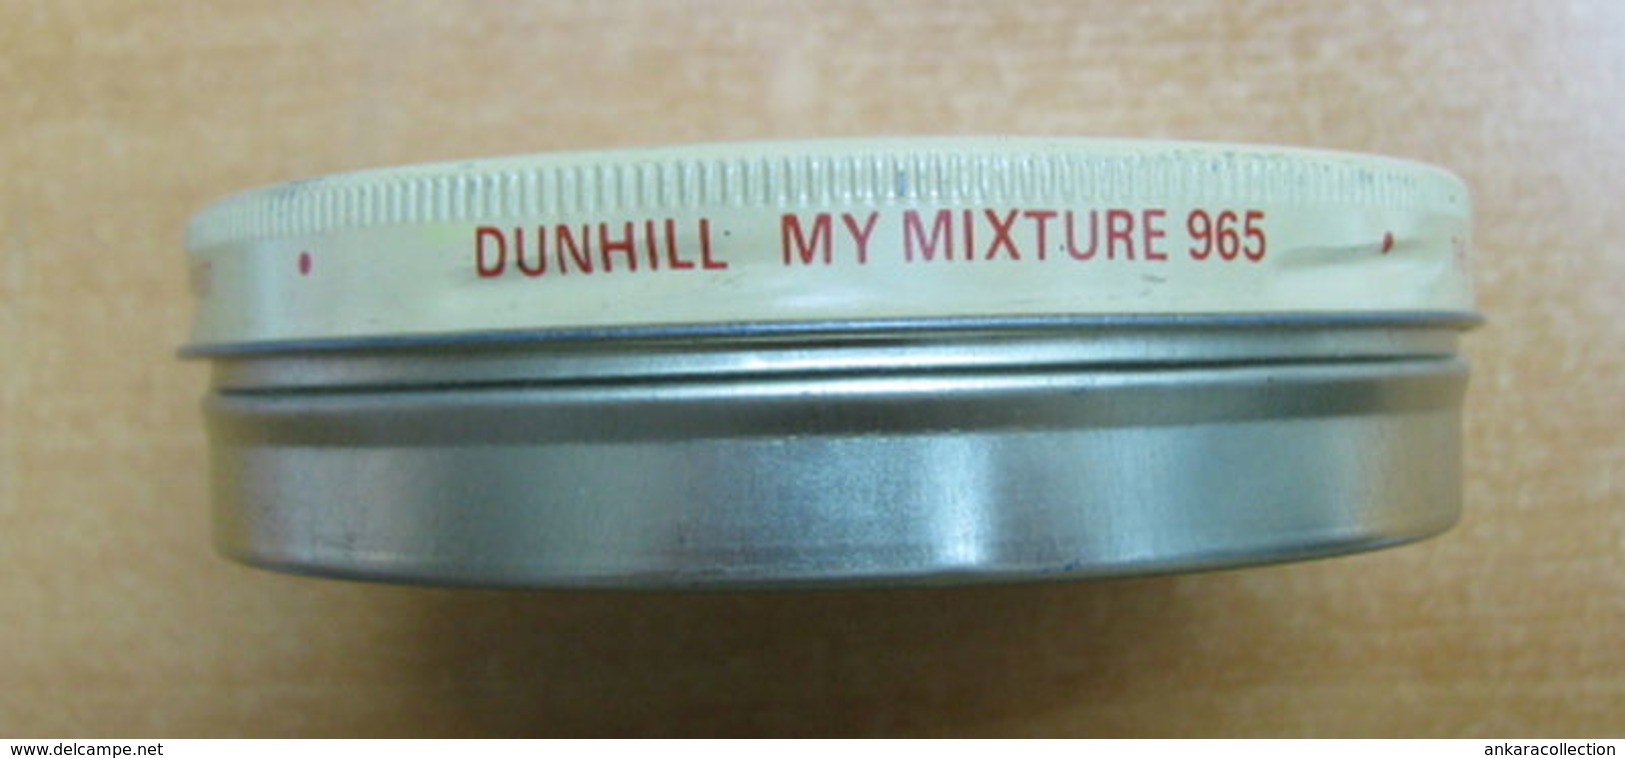 AC - DUNHILL MIXTURE 965 CIGARETE - TOBACCO EMPTY TIN BOX FINE CONDITION FOR COLLECTION - Empty Tobacco Boxes